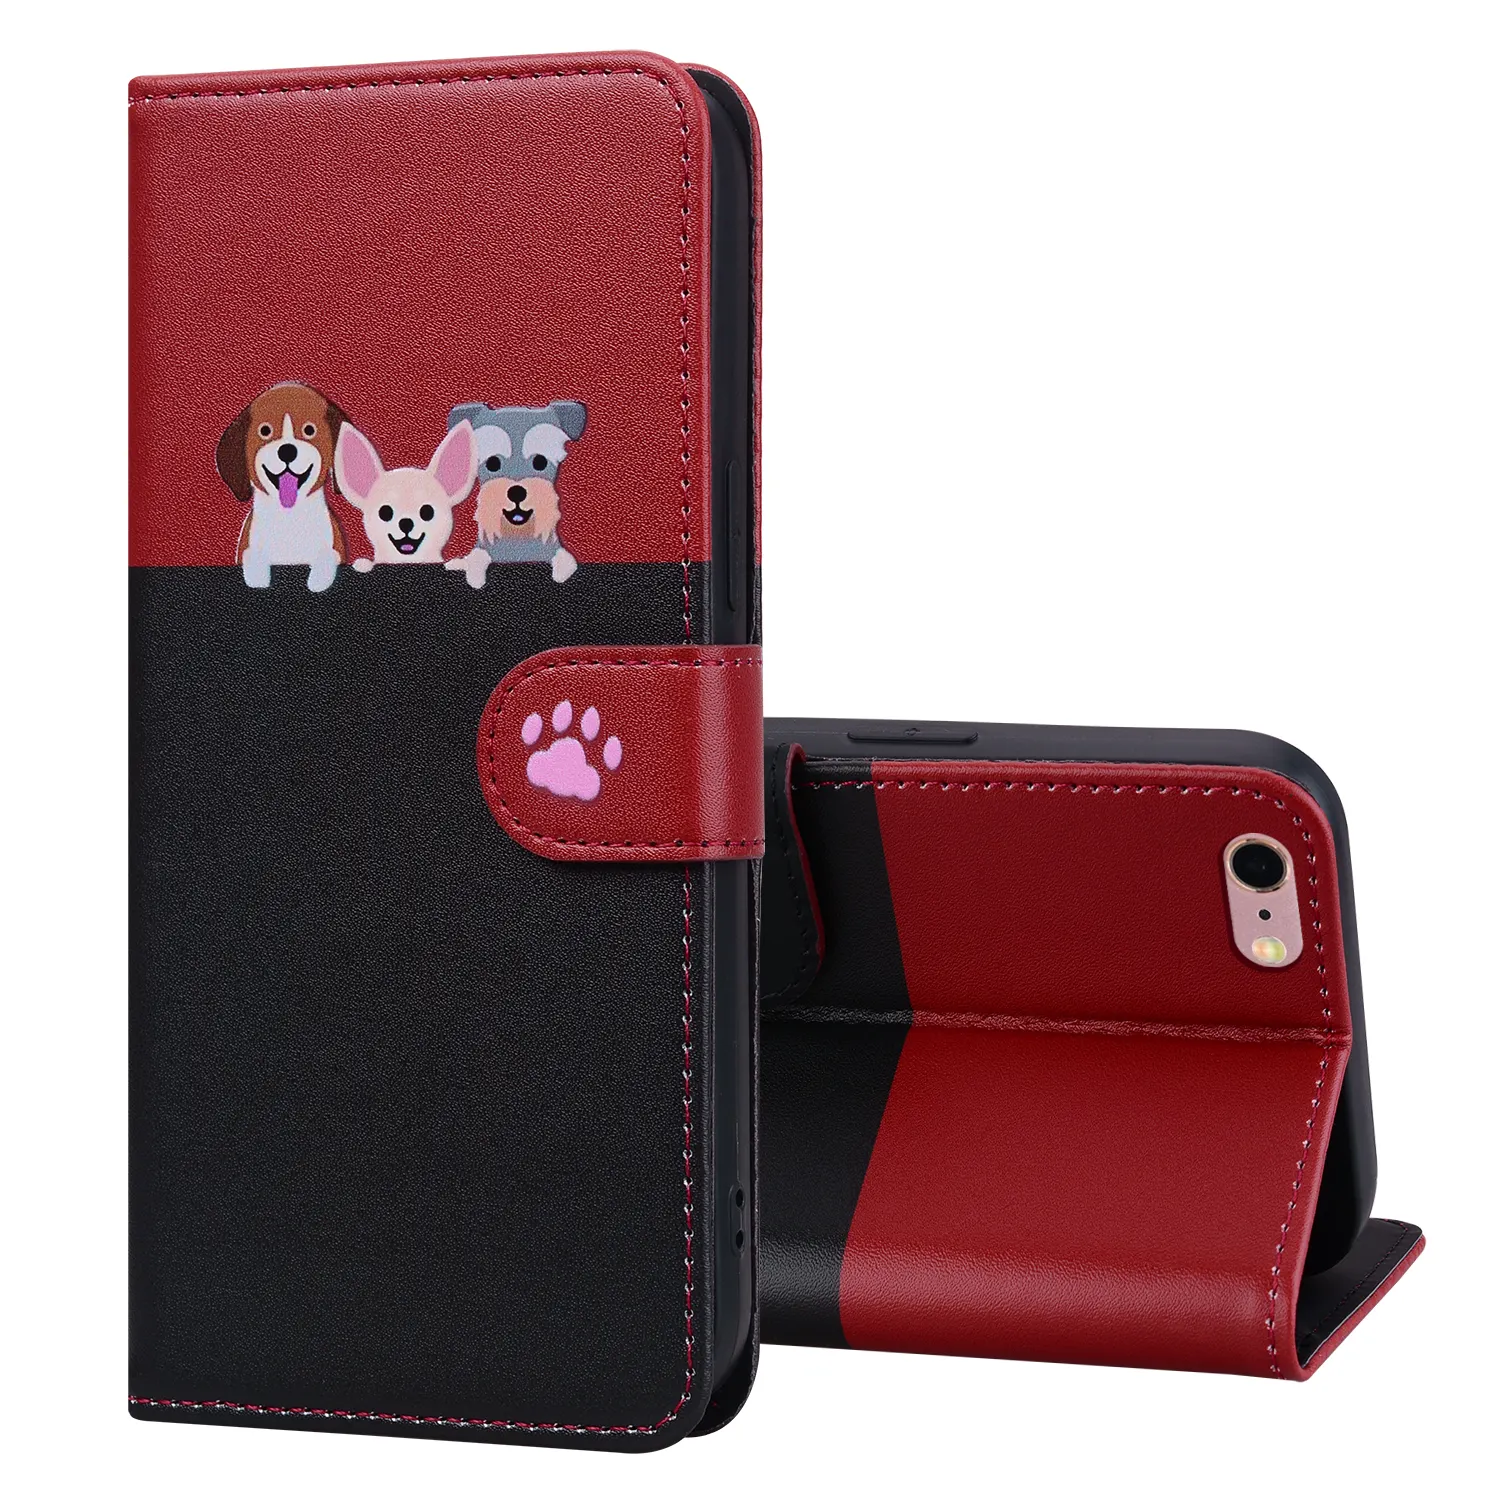 Симпатичный кожаный чехол для телефона с рисунком кошки собаки для iPhone 6 Plus